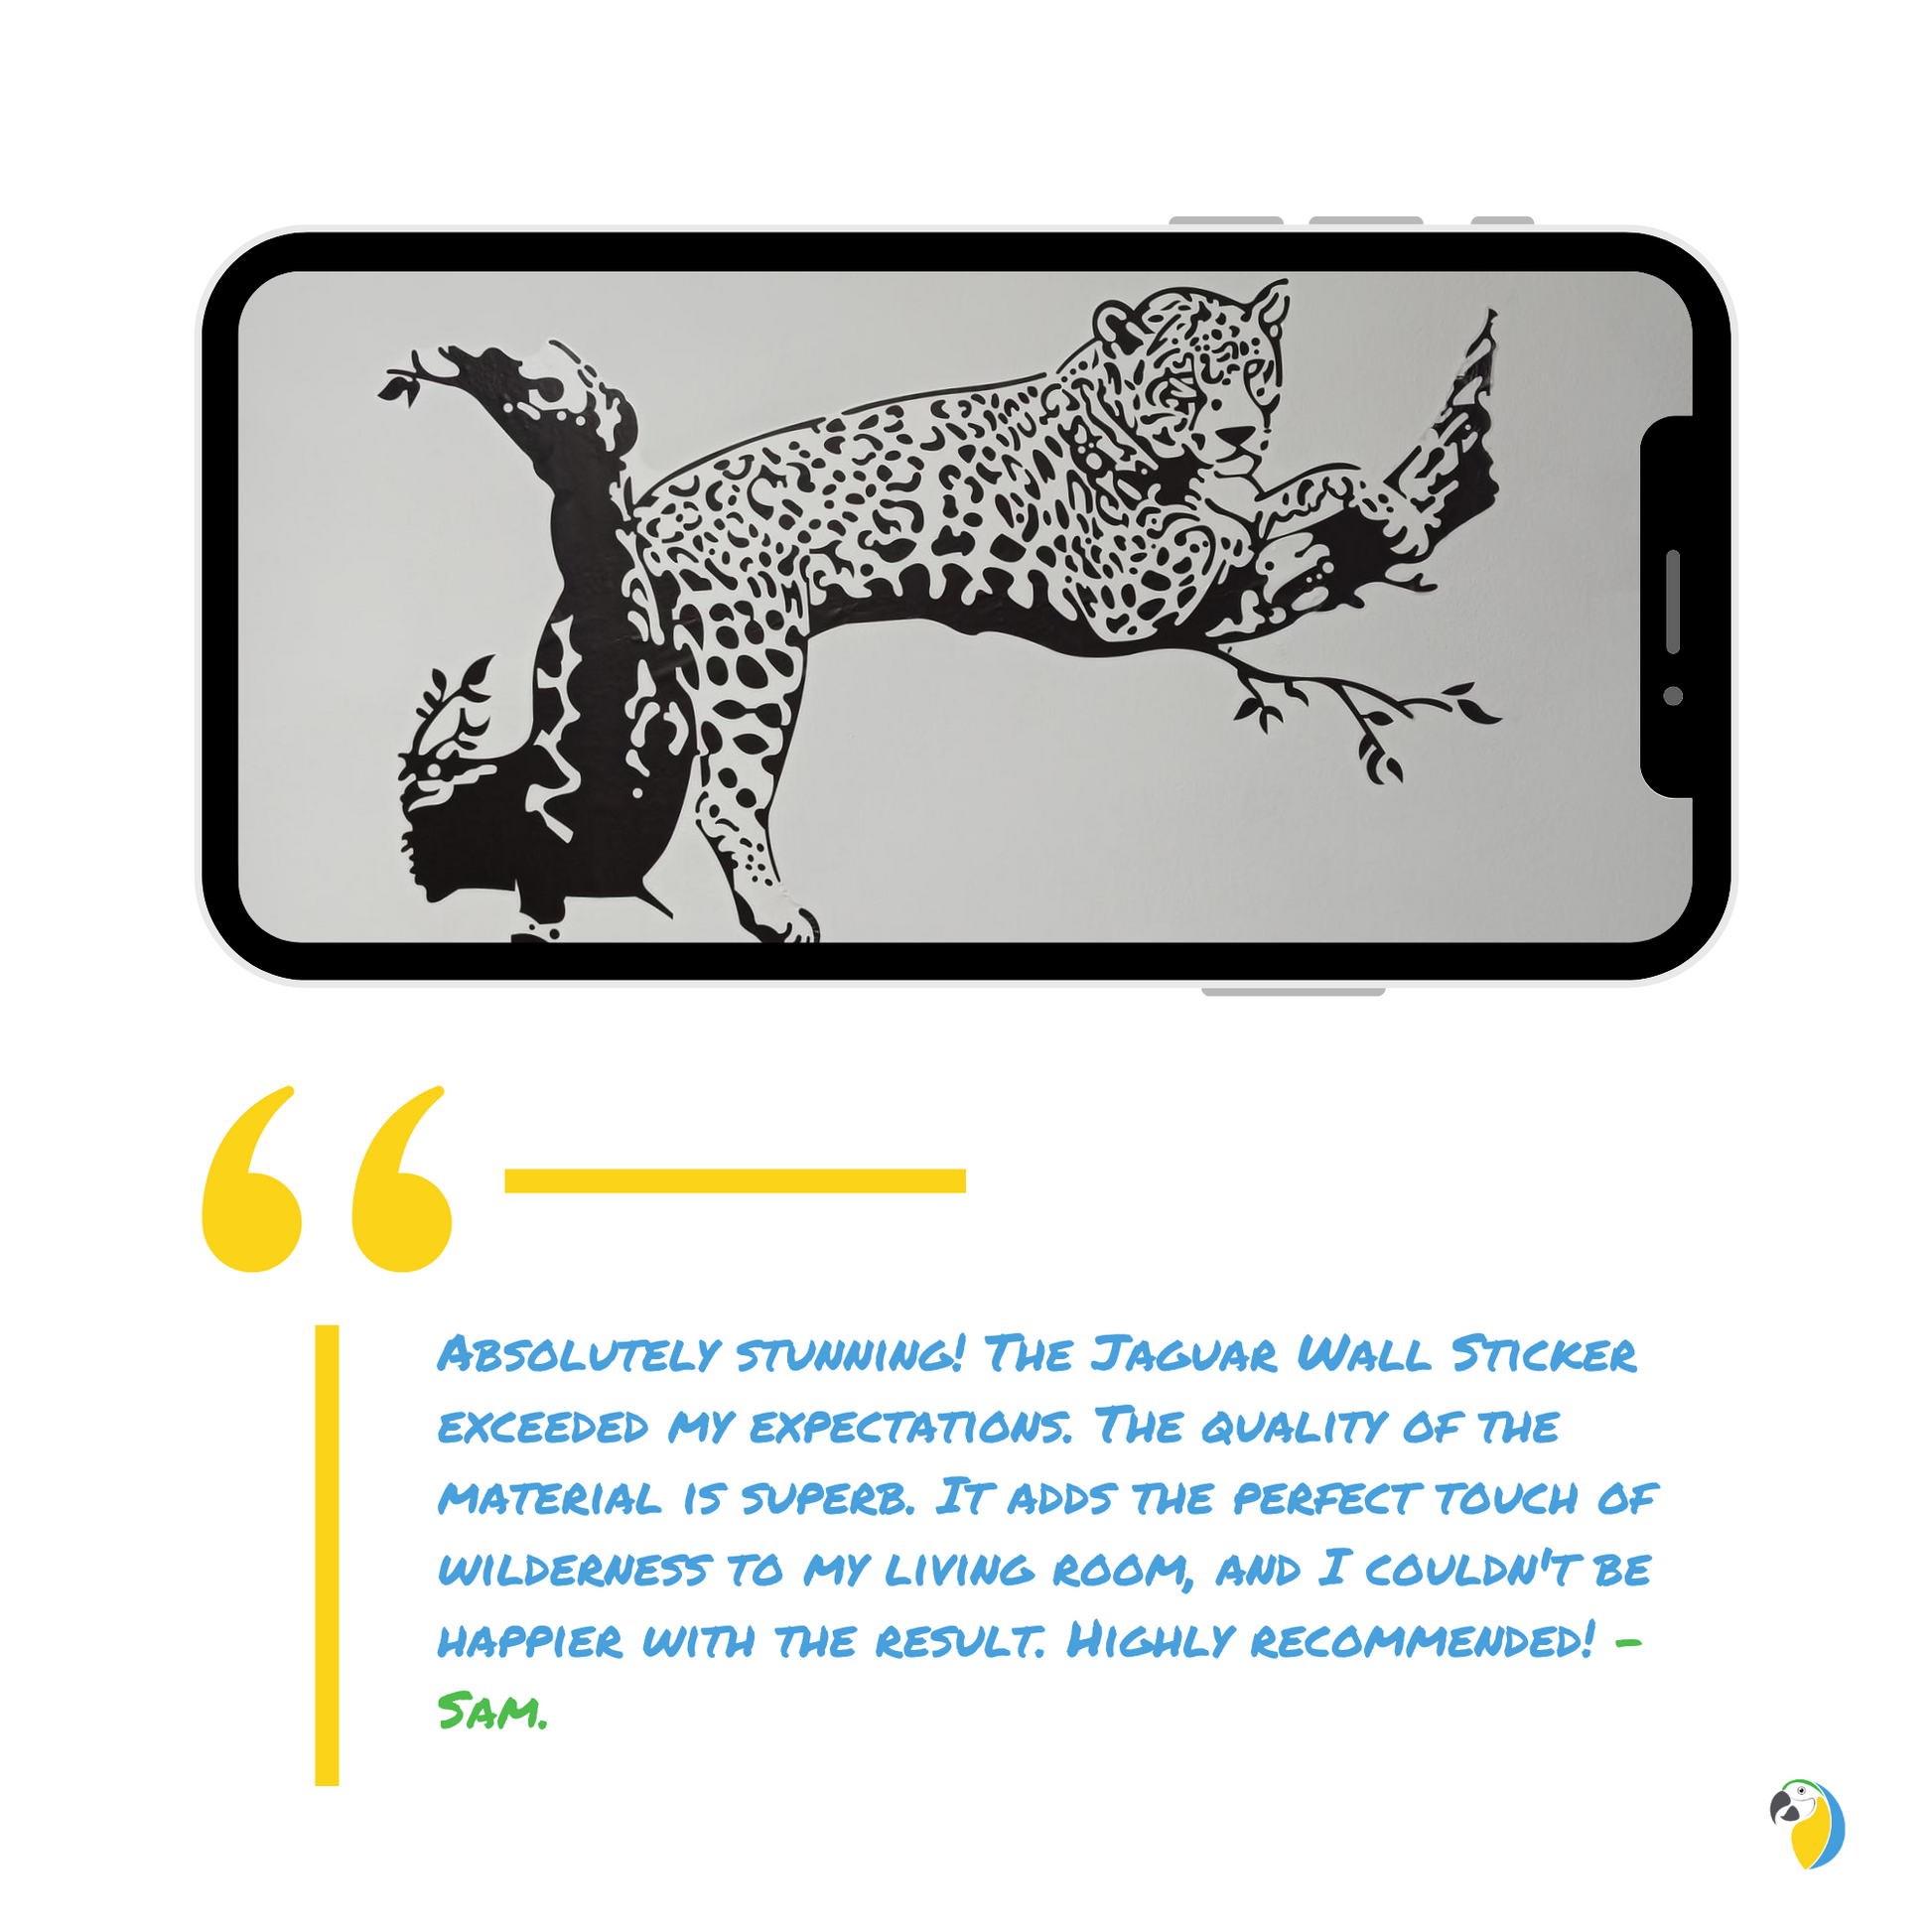 Brazil Pantanal Jaguar Wall Sticker, Cheetah Panther Animal Decal For Home Decor • Papagaio Studio Shop